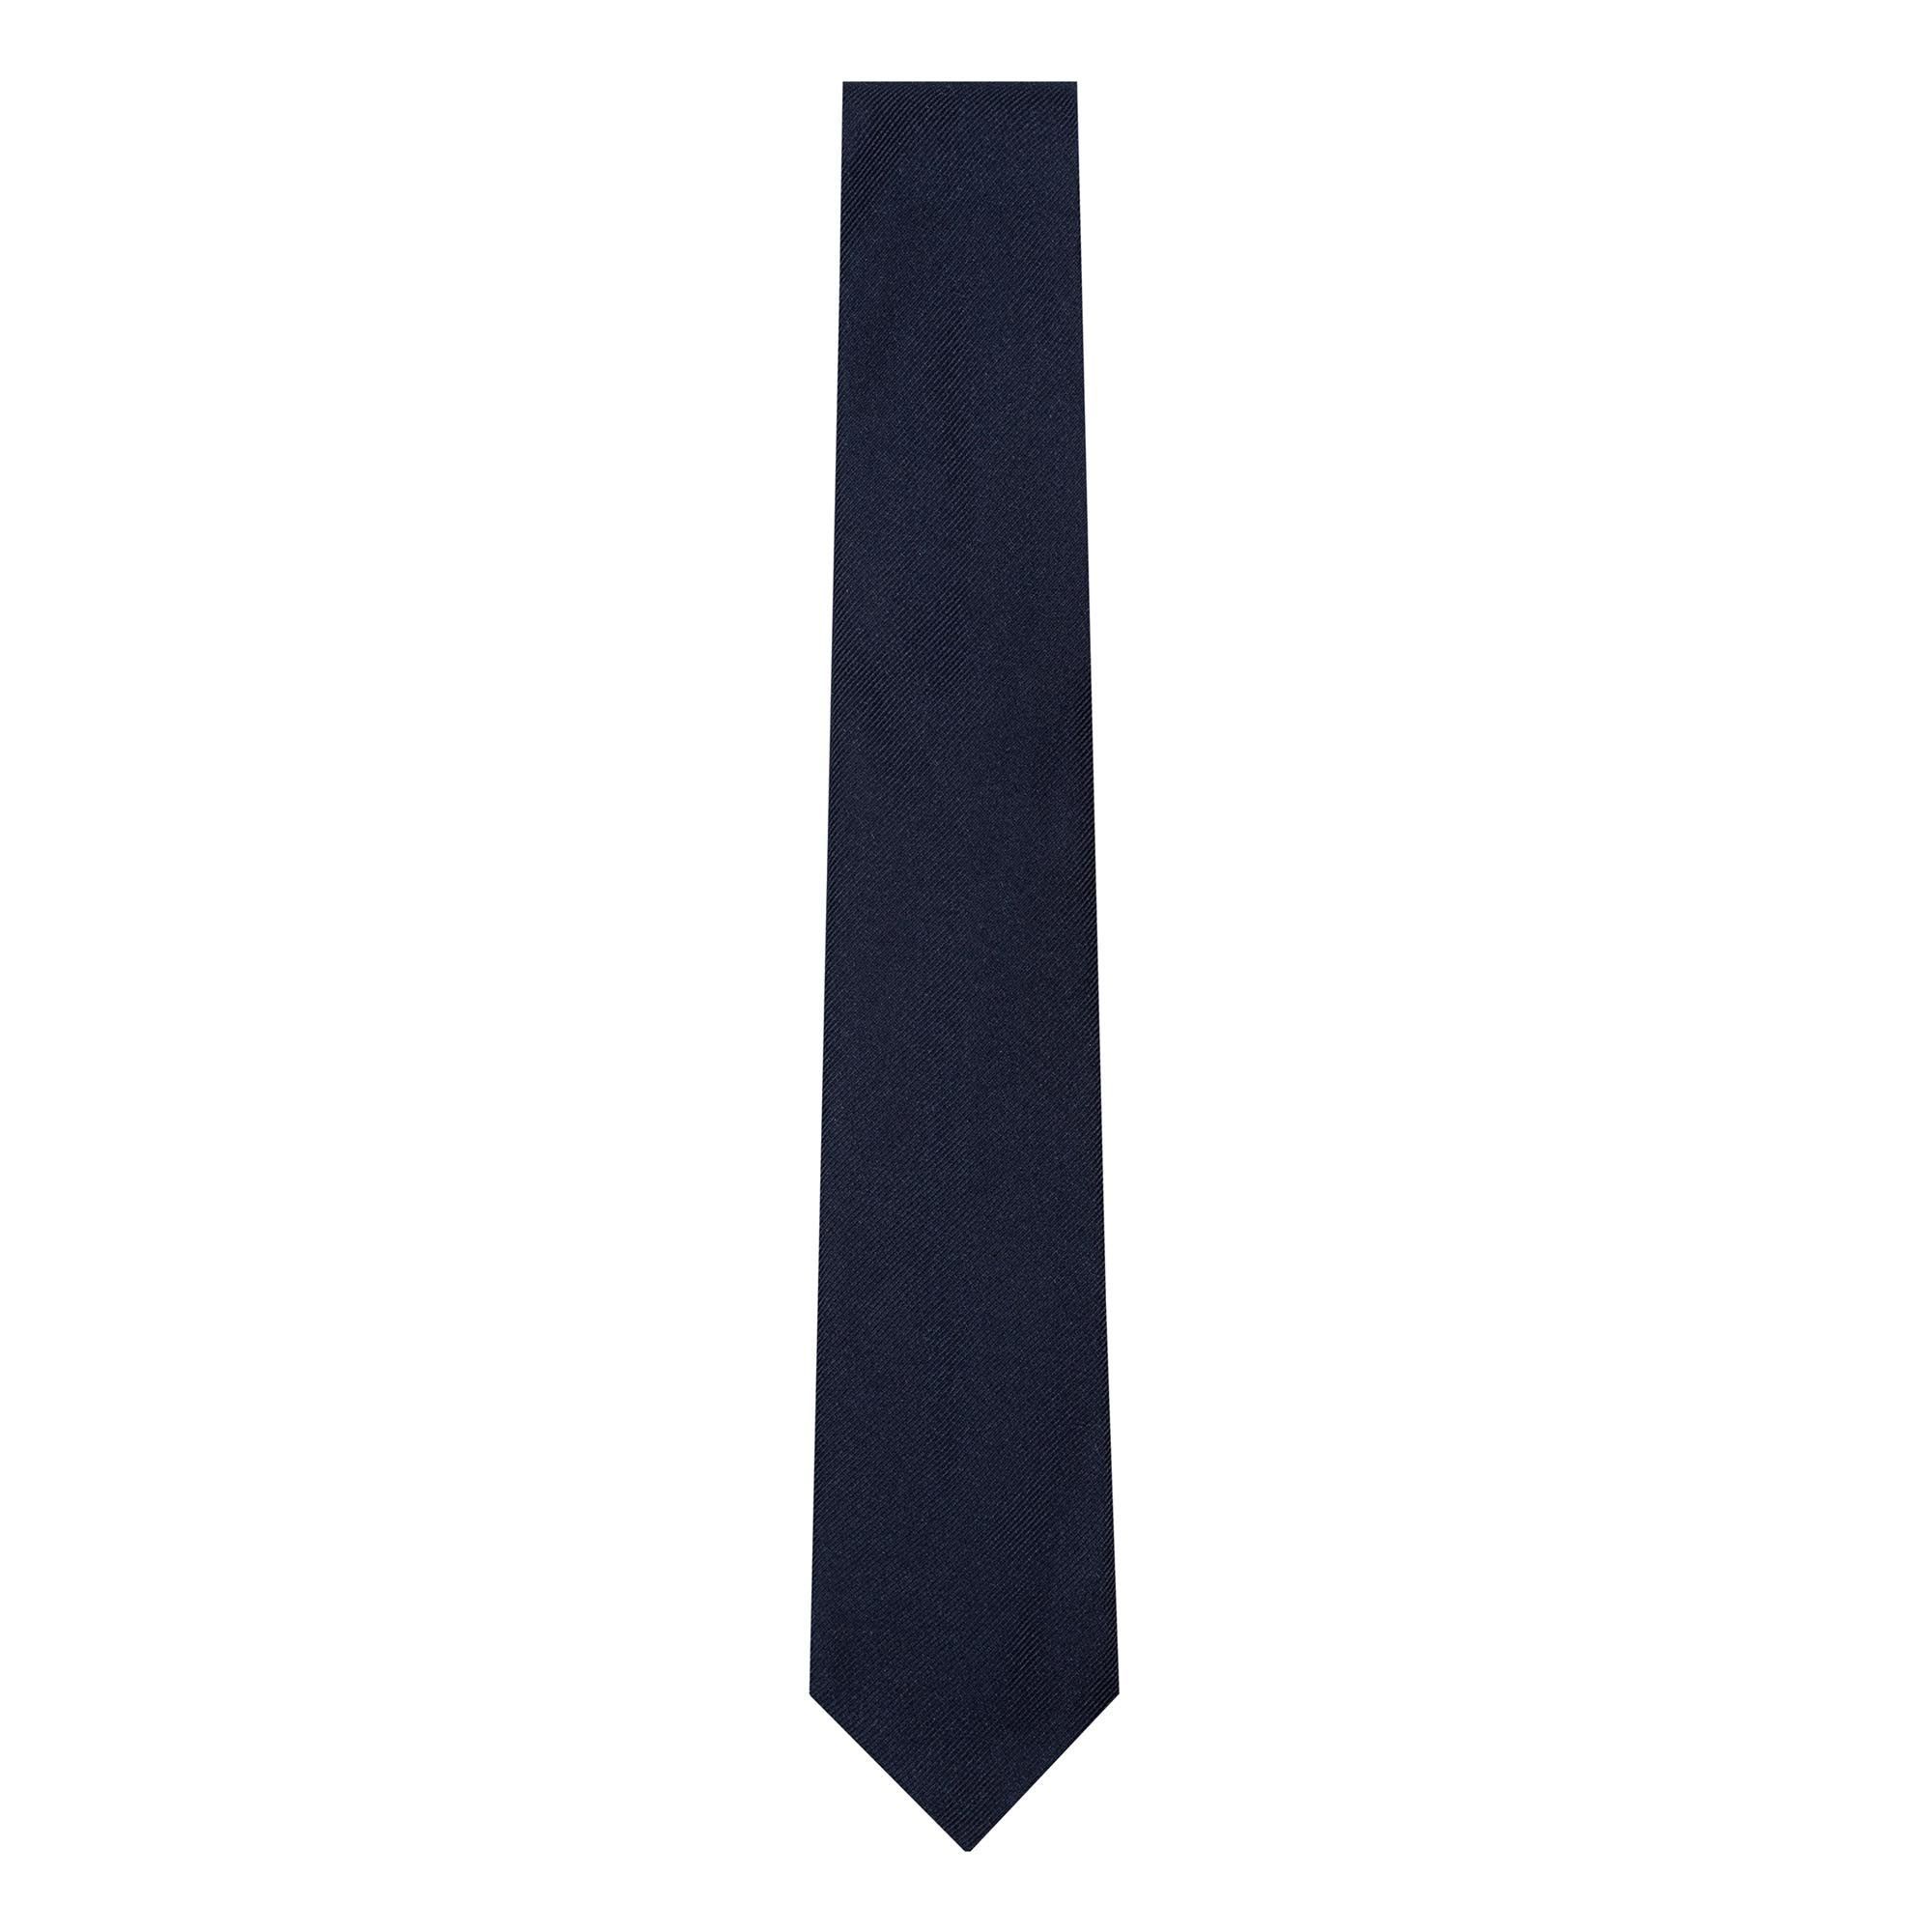 Μονόχρωμη γραβάτα μπλε navy